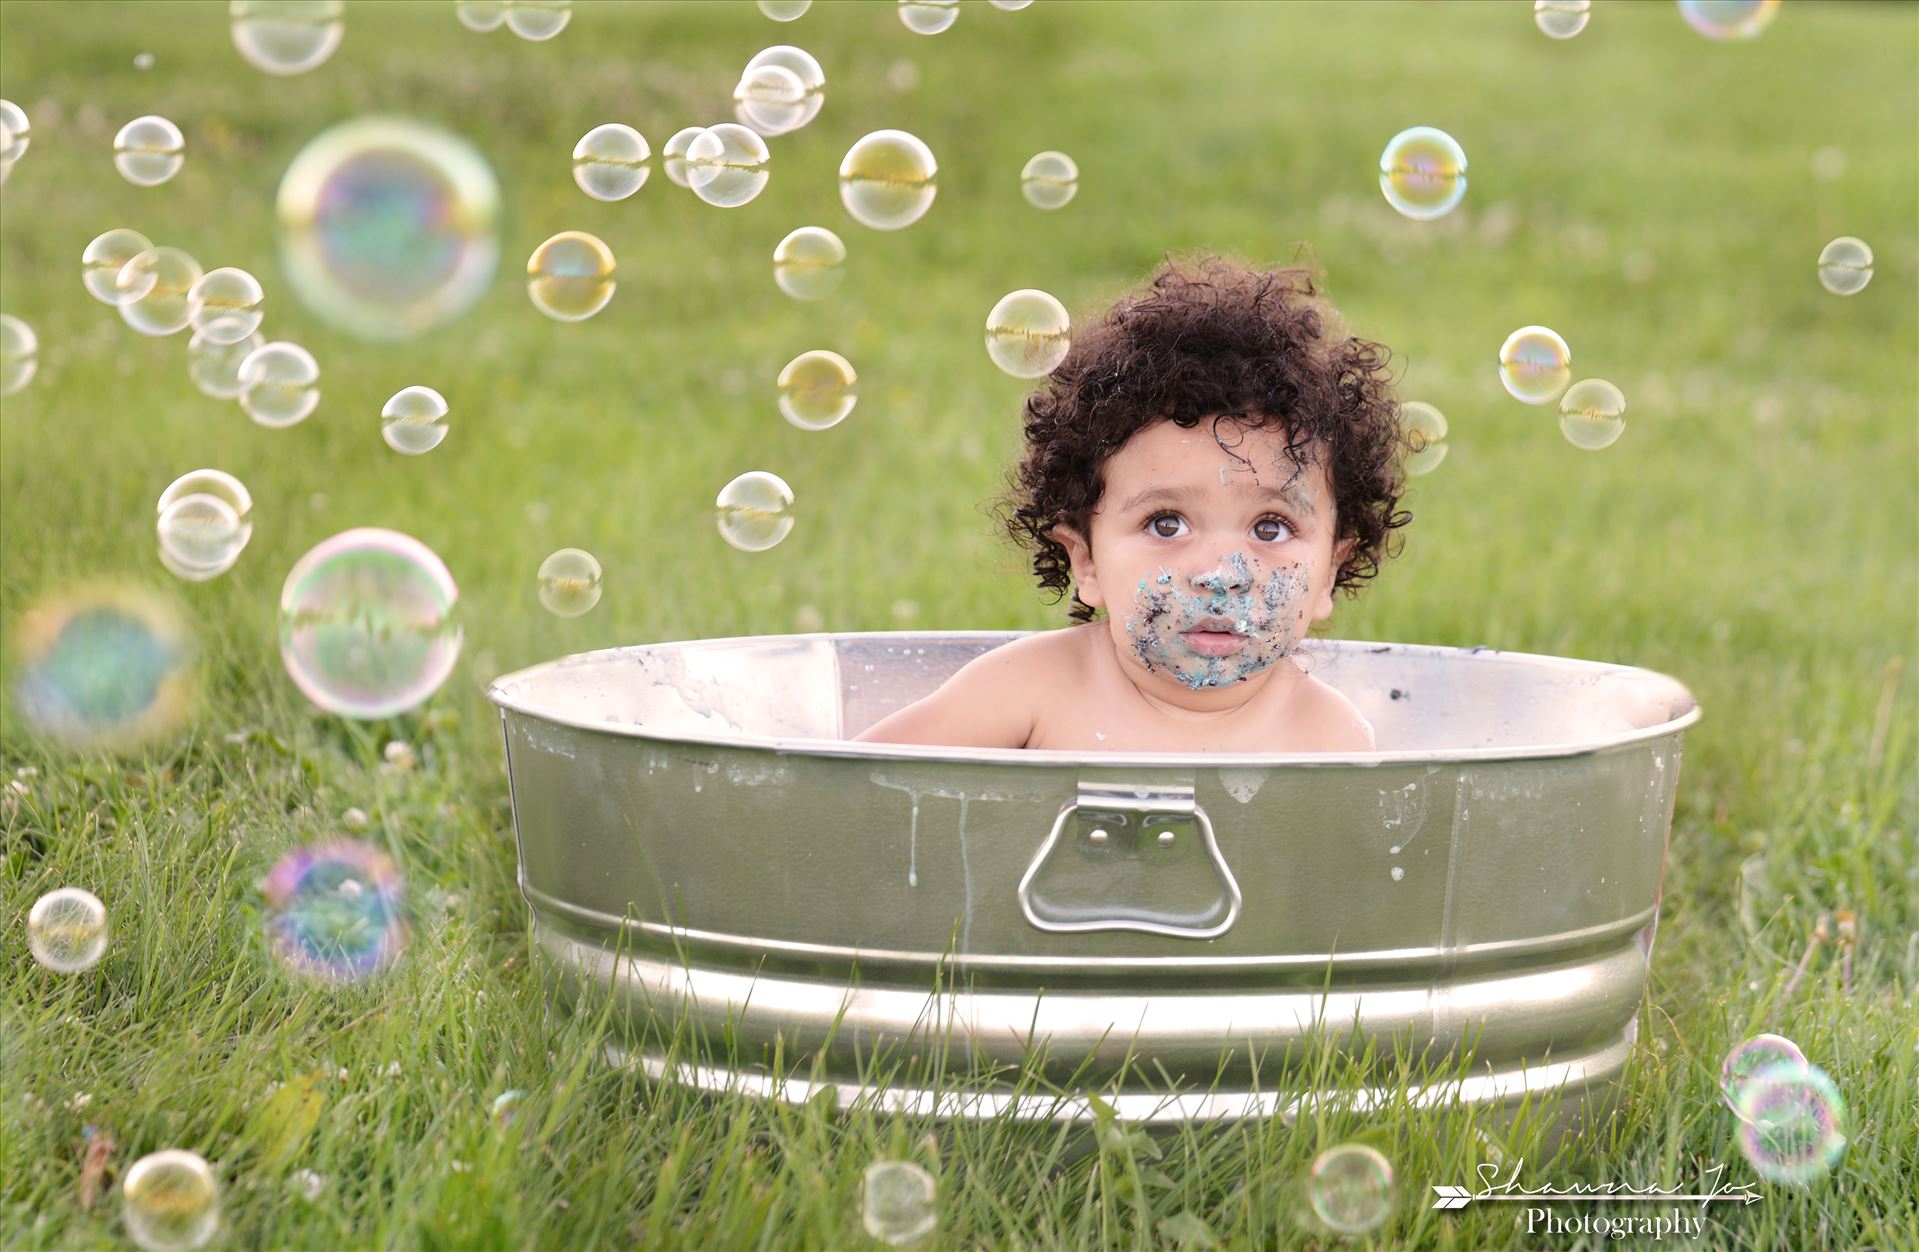 Rub a Dub Dub.jpeg - Rub a dub dub, look at this cutie in a tub! by Shawna Jo Photography